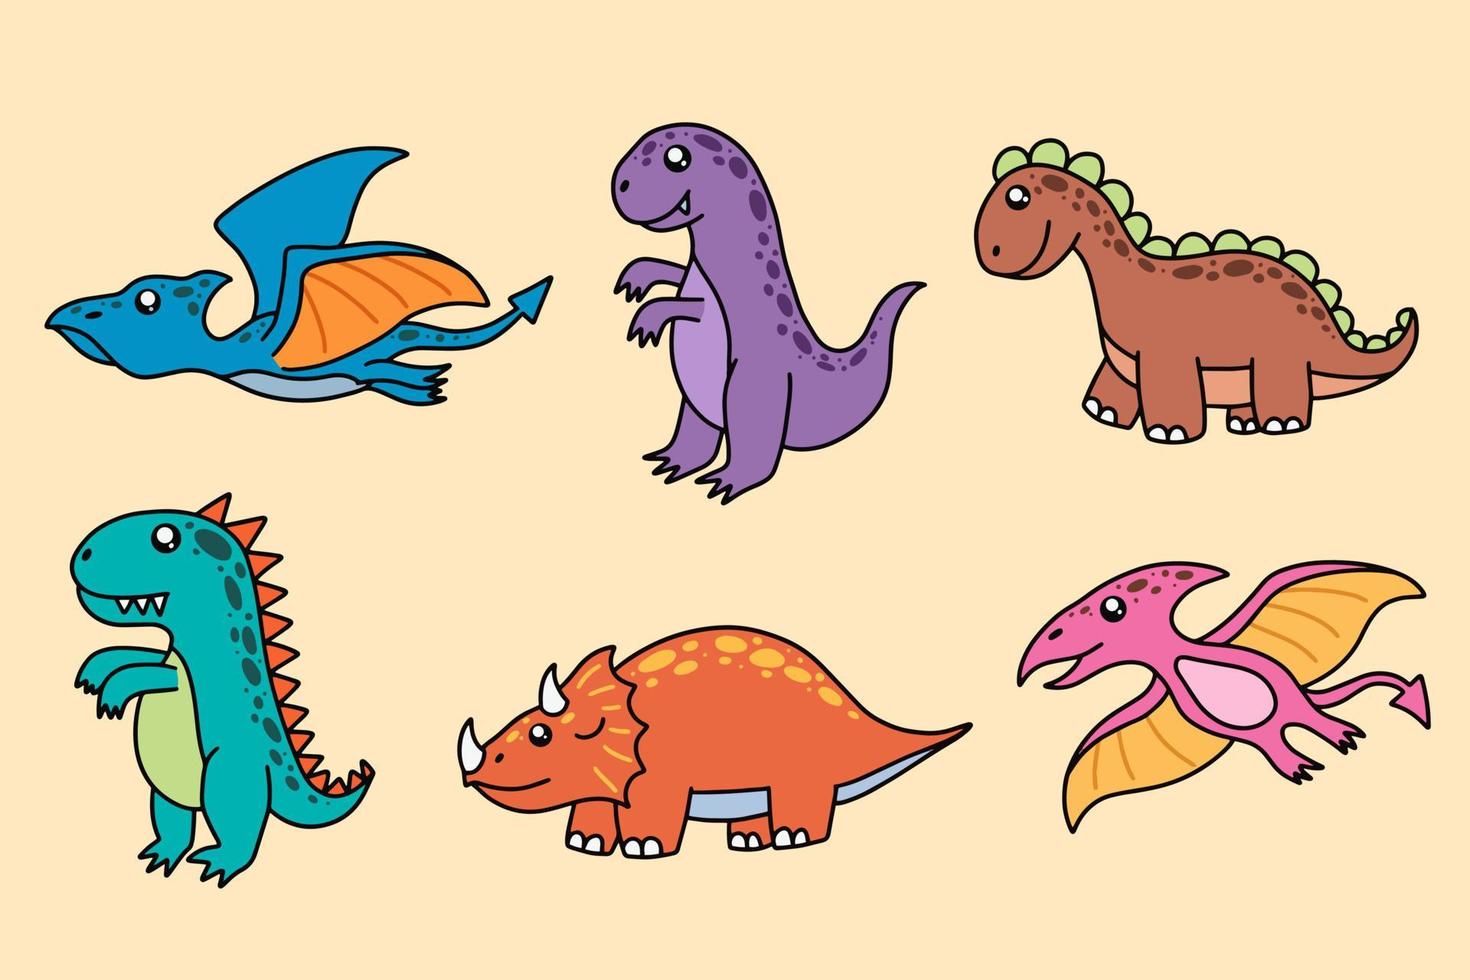 set collectie schattige dinosaurussen fossiele cartoon doodle karakter handgetekende platte lijntekeningen vector